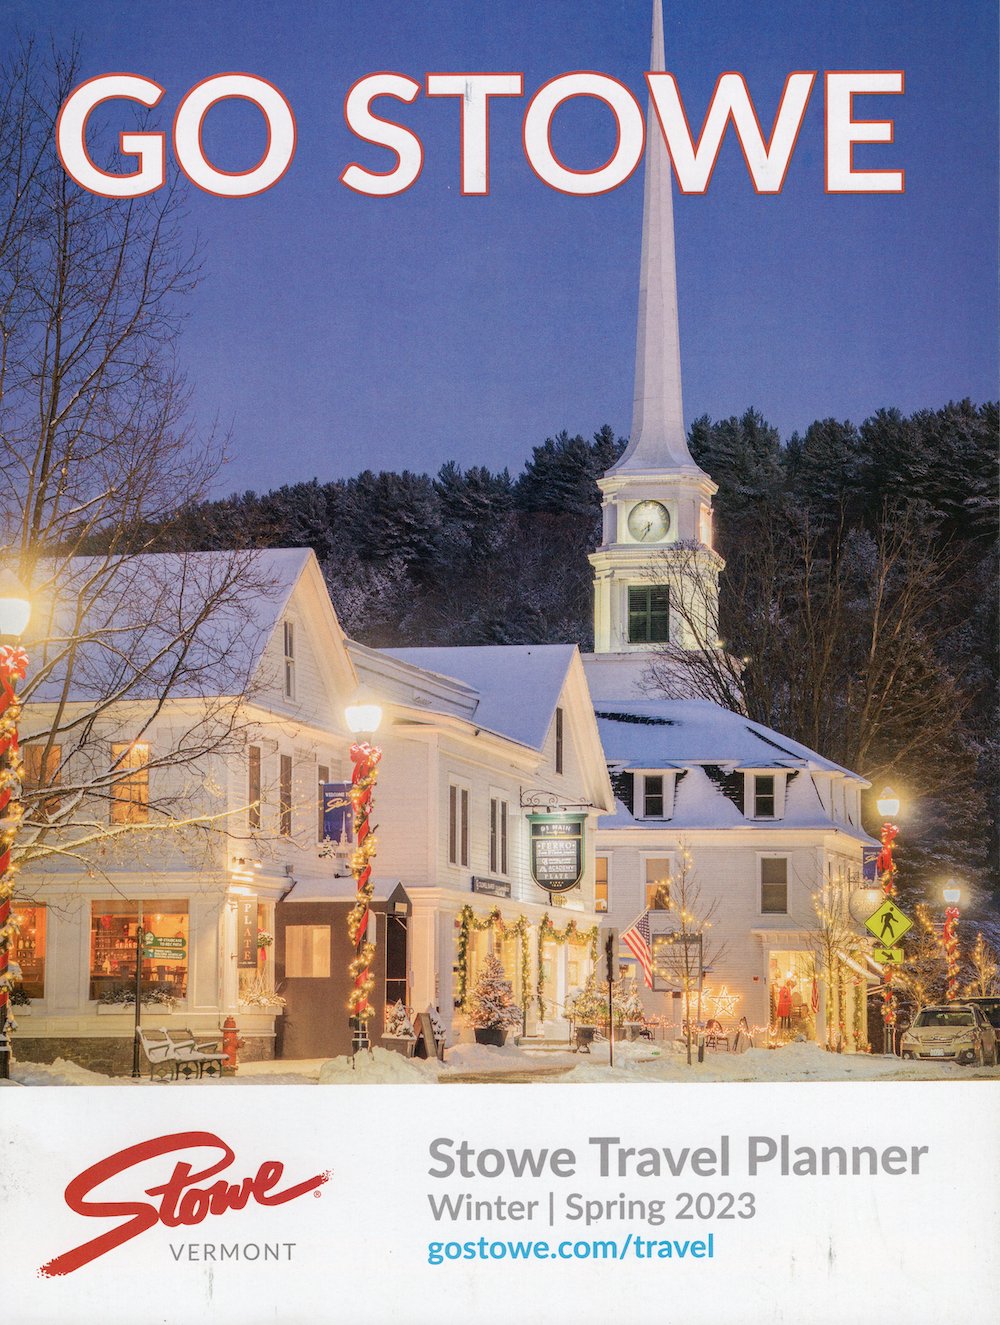 Go Stowe Travel Planner brochure full size